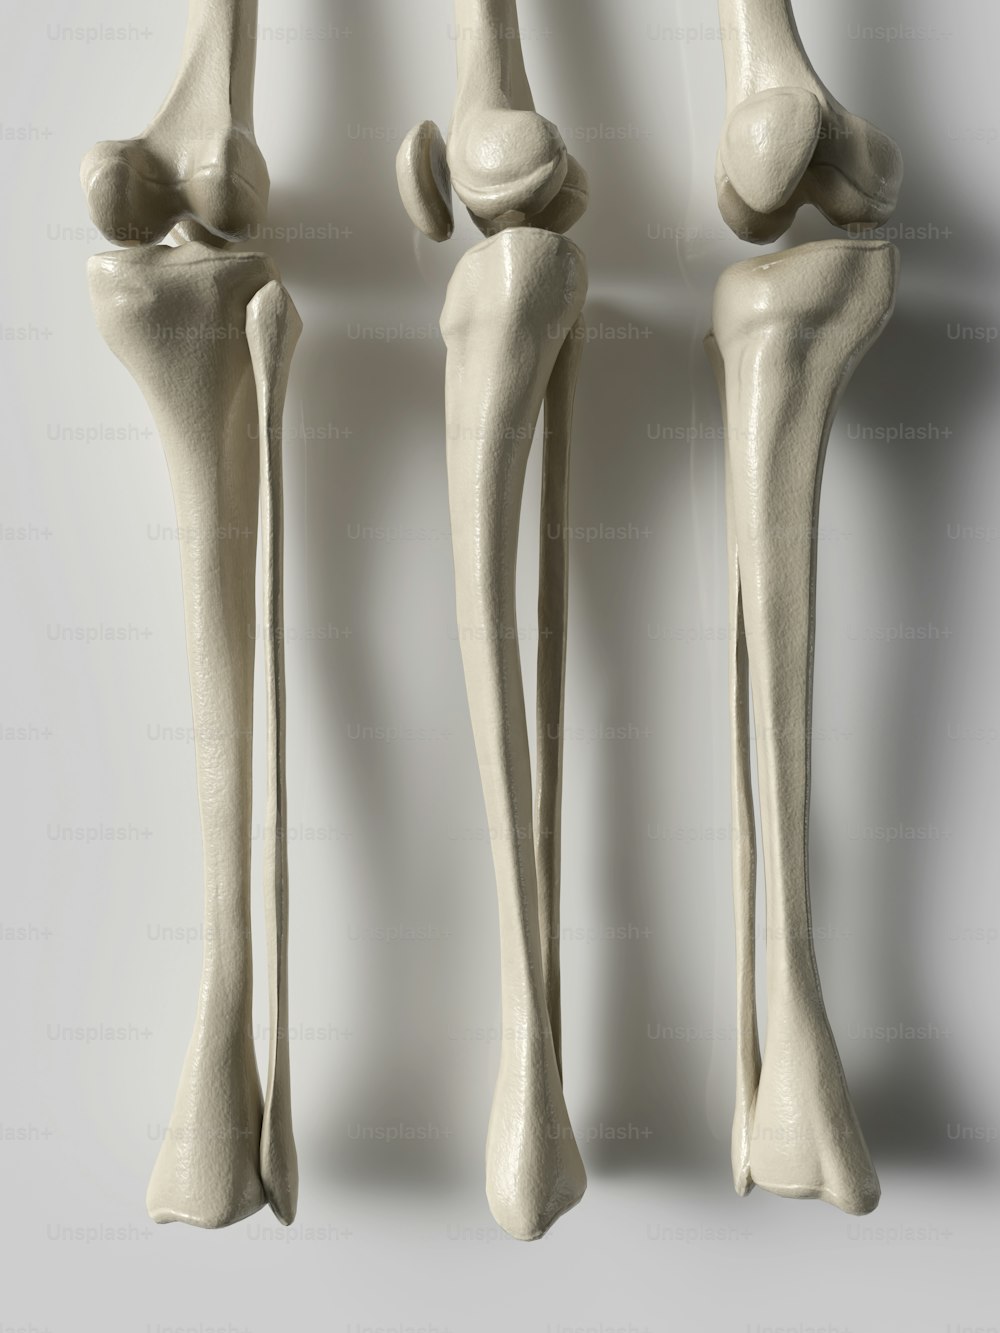 três visões diferentes dos ossos de um ser humano